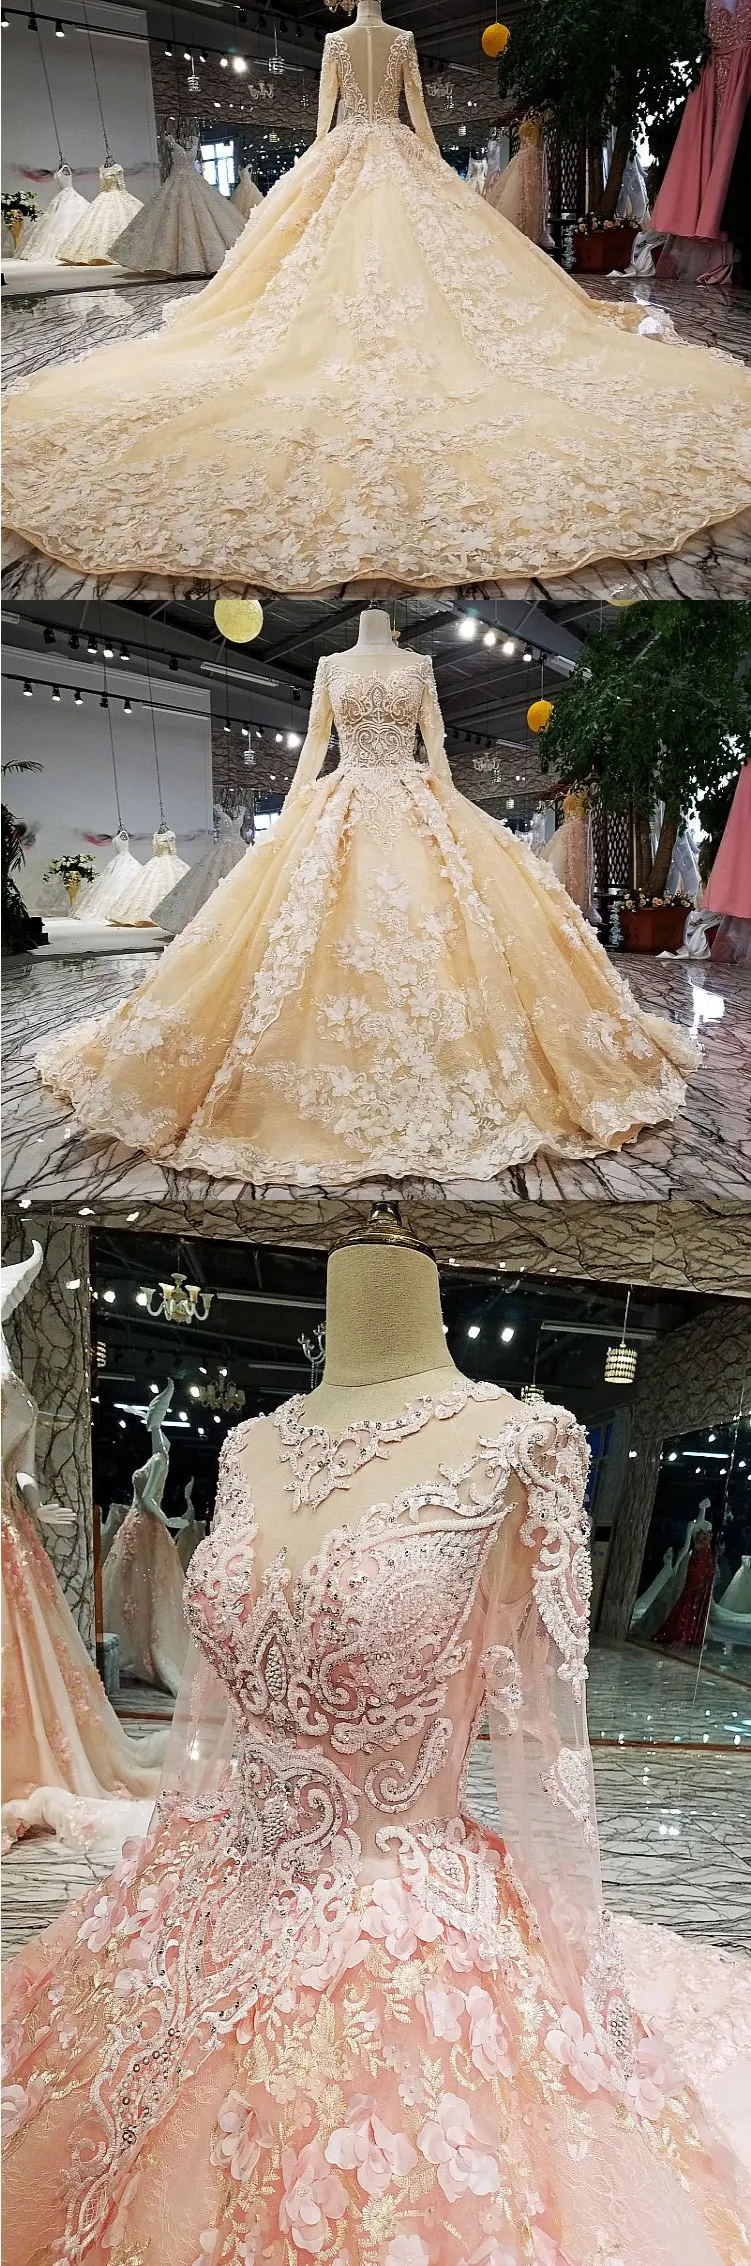 AIJINGYU роскошное платье принцессы с кристаллами, сверкающими бриллиантами, новинка,, платье с v-образным вырезом, вечерние свадебные платья, свадебное платье WT122